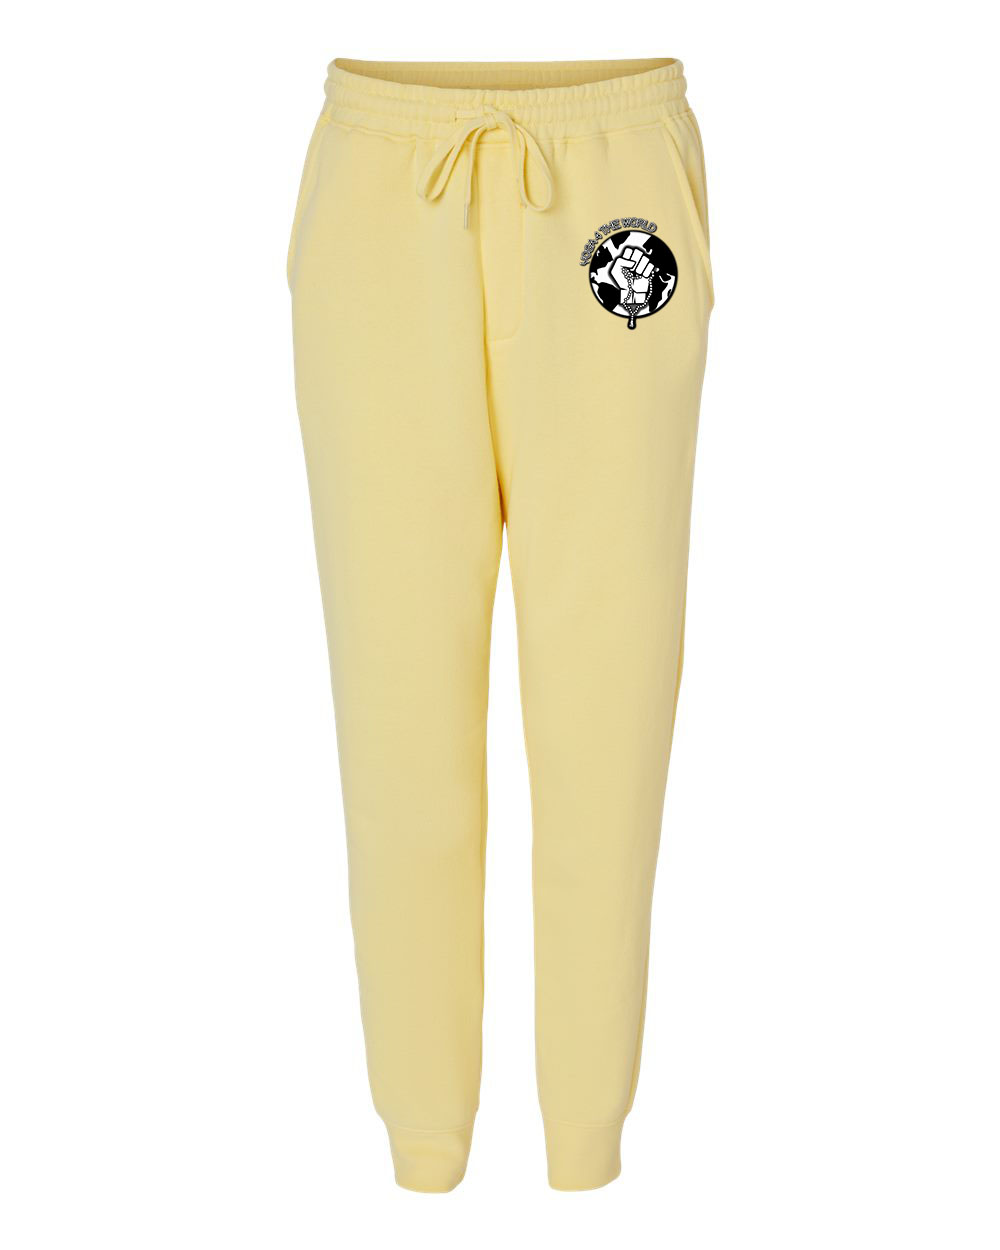 Yoga4TheWorld Light Yellow Fleece Pants